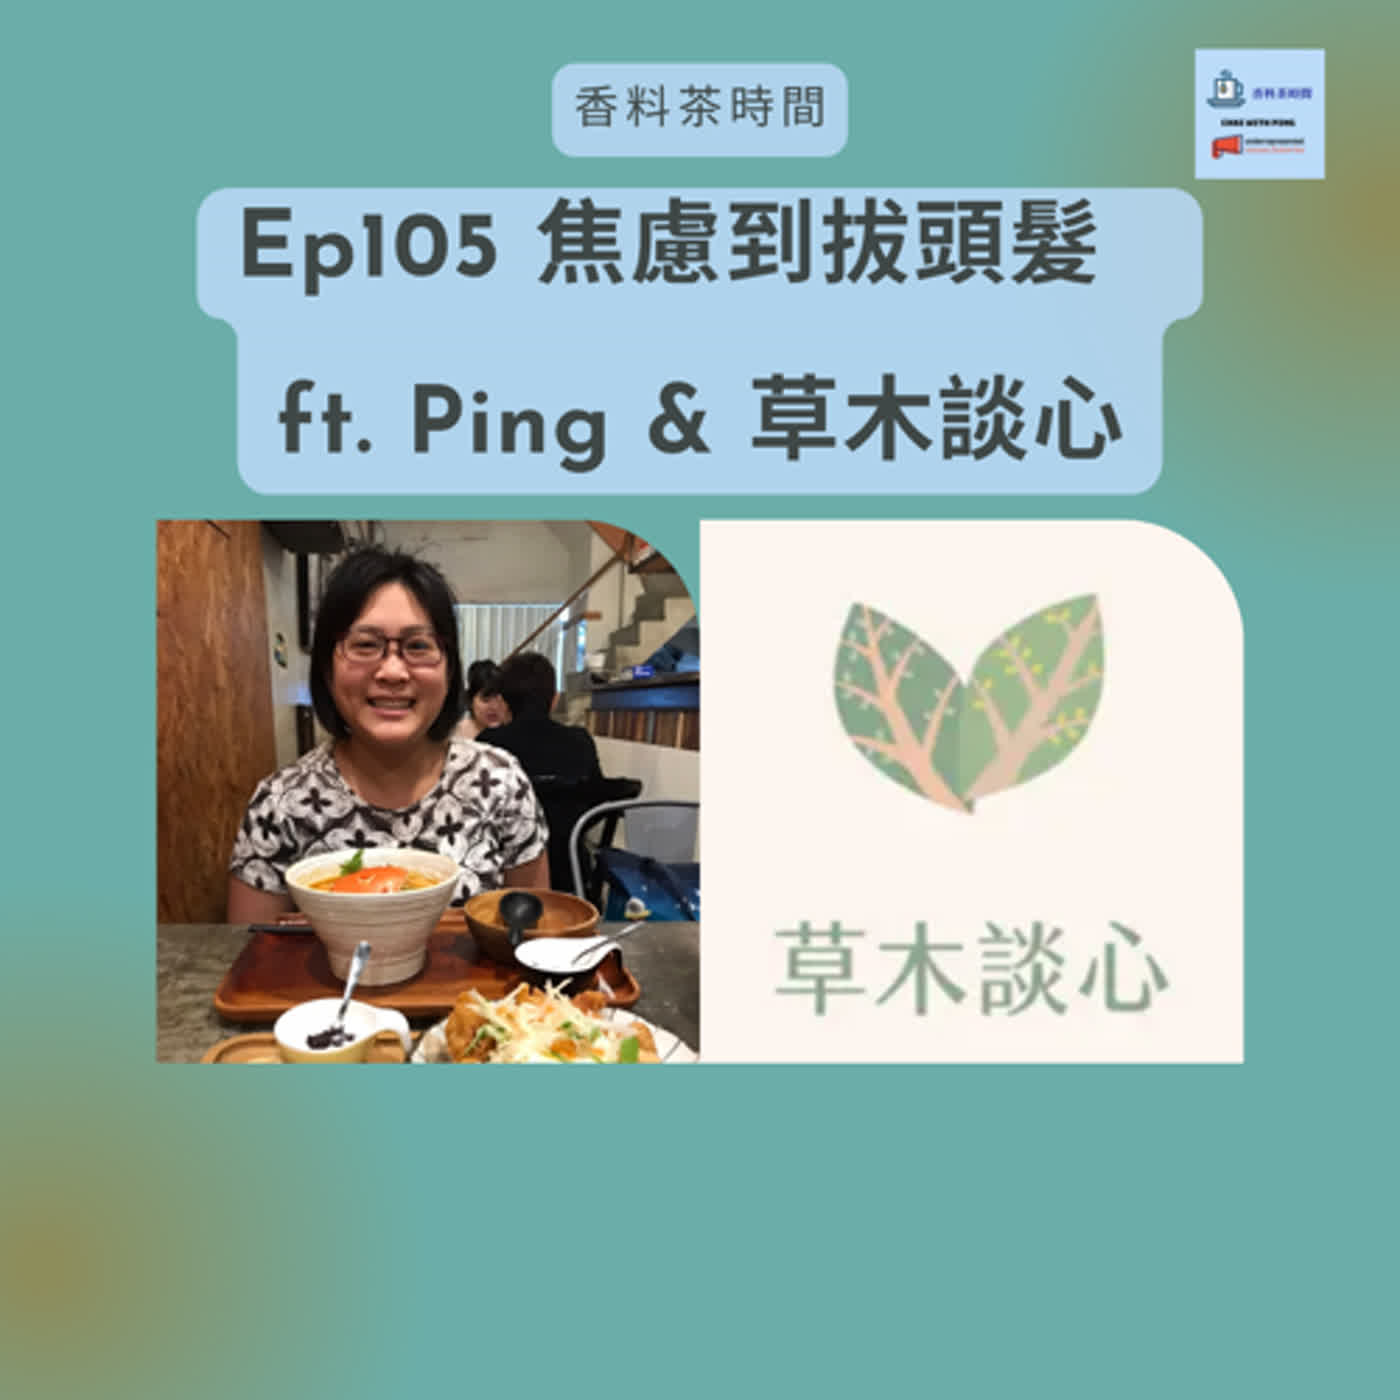 [茶時間] Ep105 焦慮到拔頭髮  ft. Ping & 草木談心